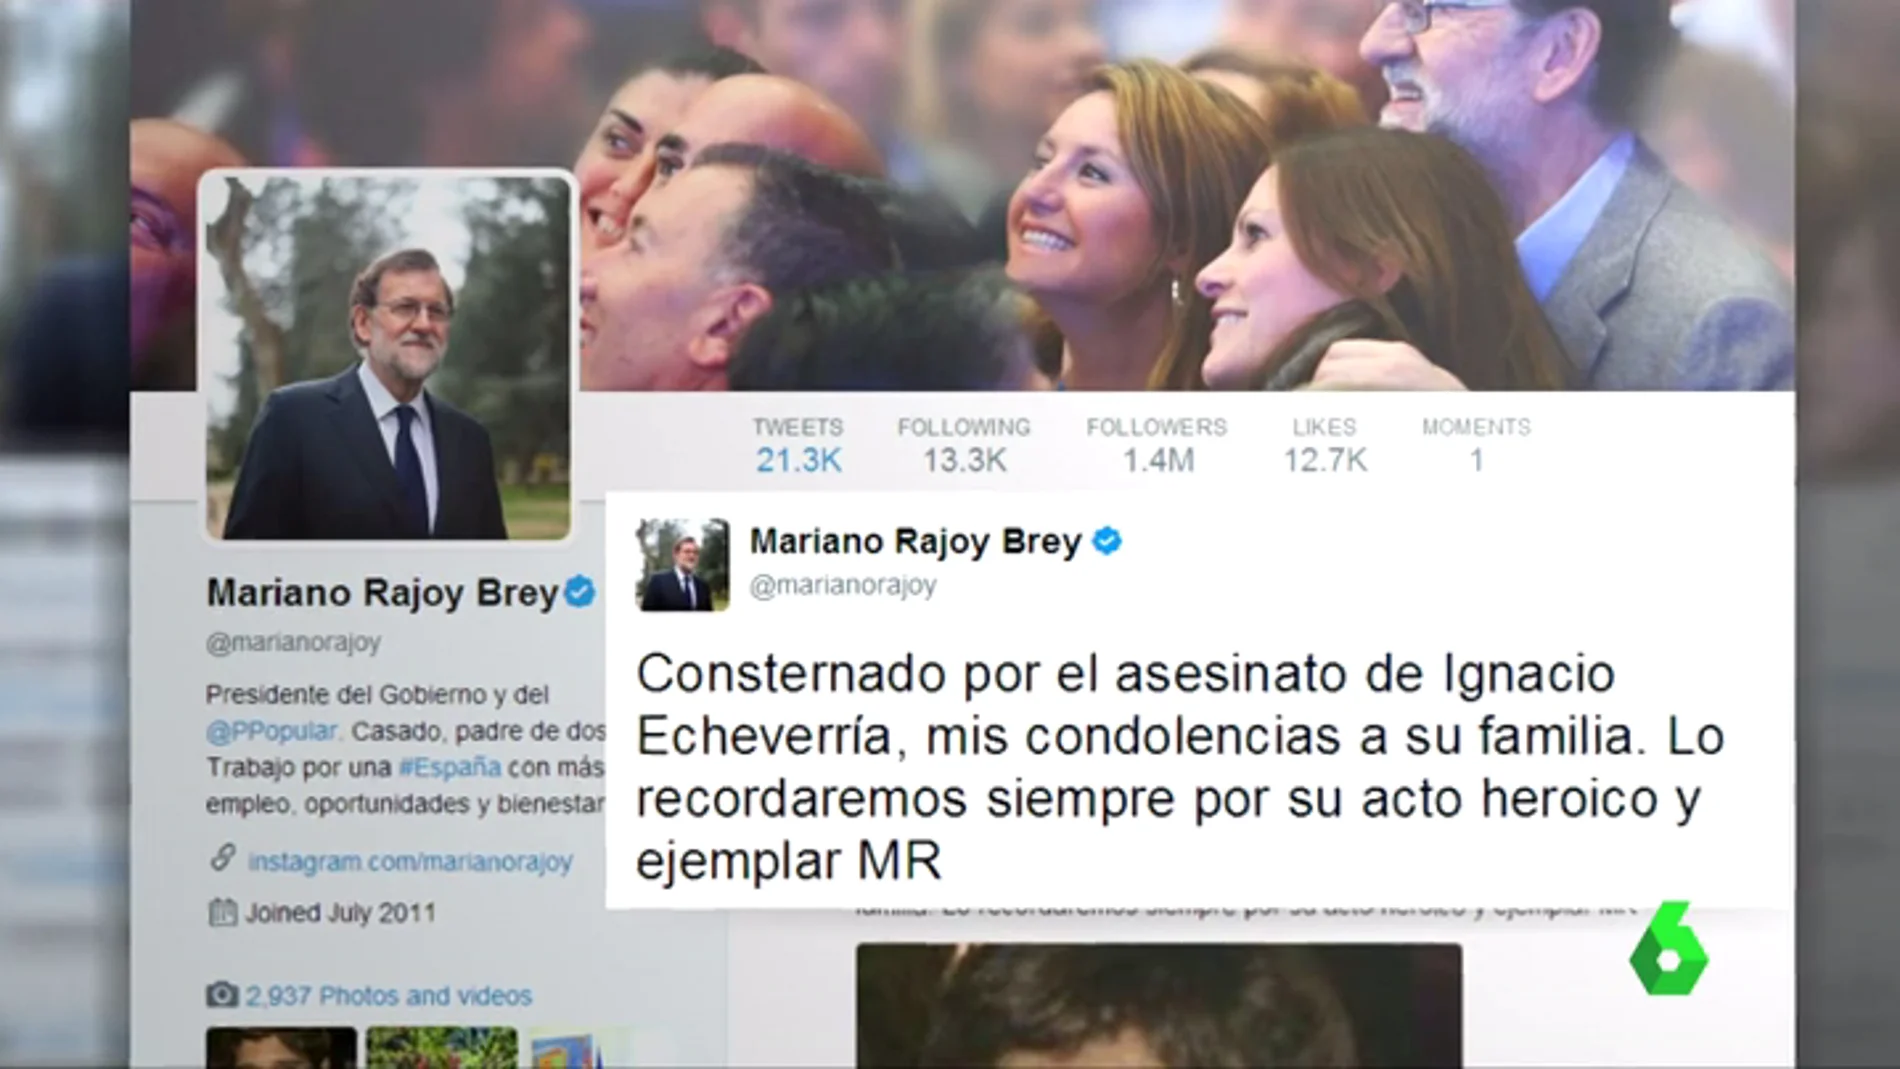 Tuit de Mariano Rajoy